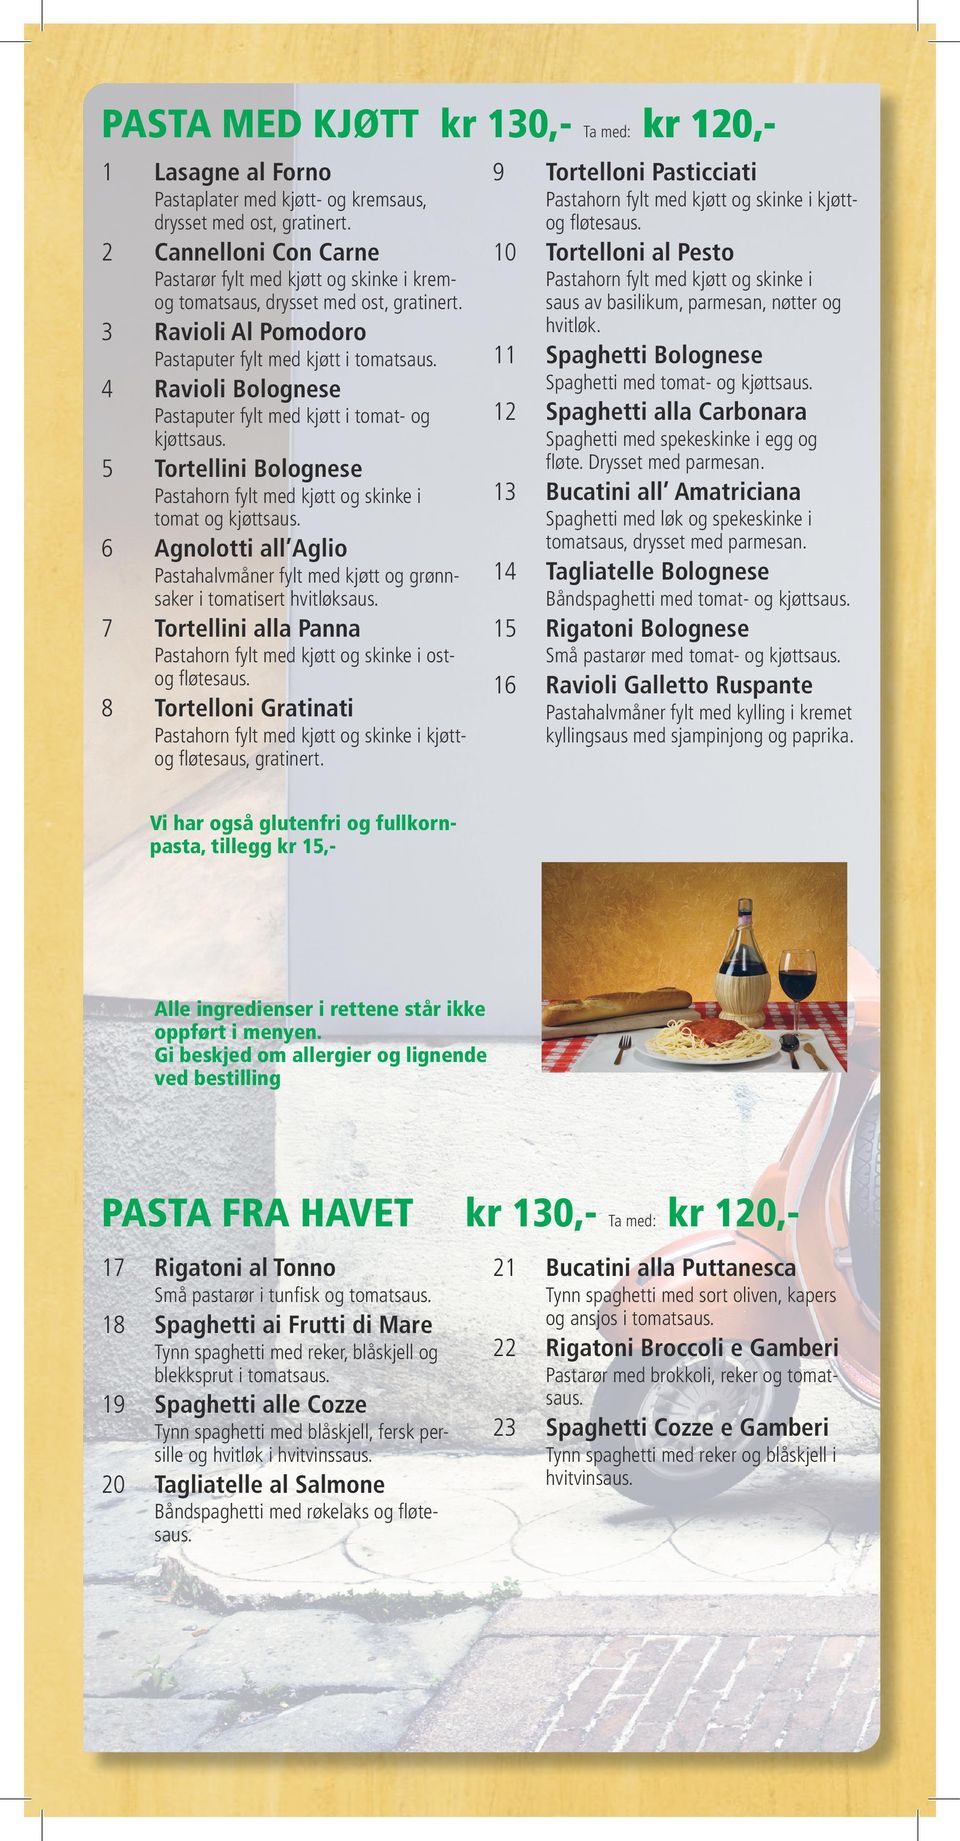 3 Pastahorn fylt med kjøtt og skinke i saus av basilikum, parmesan, nøtter og hvitløk. Ravioli Al Pomodoro 11 Spaghetti Bolognese Pastaputer fylt med kjøtt i tomatsaus.